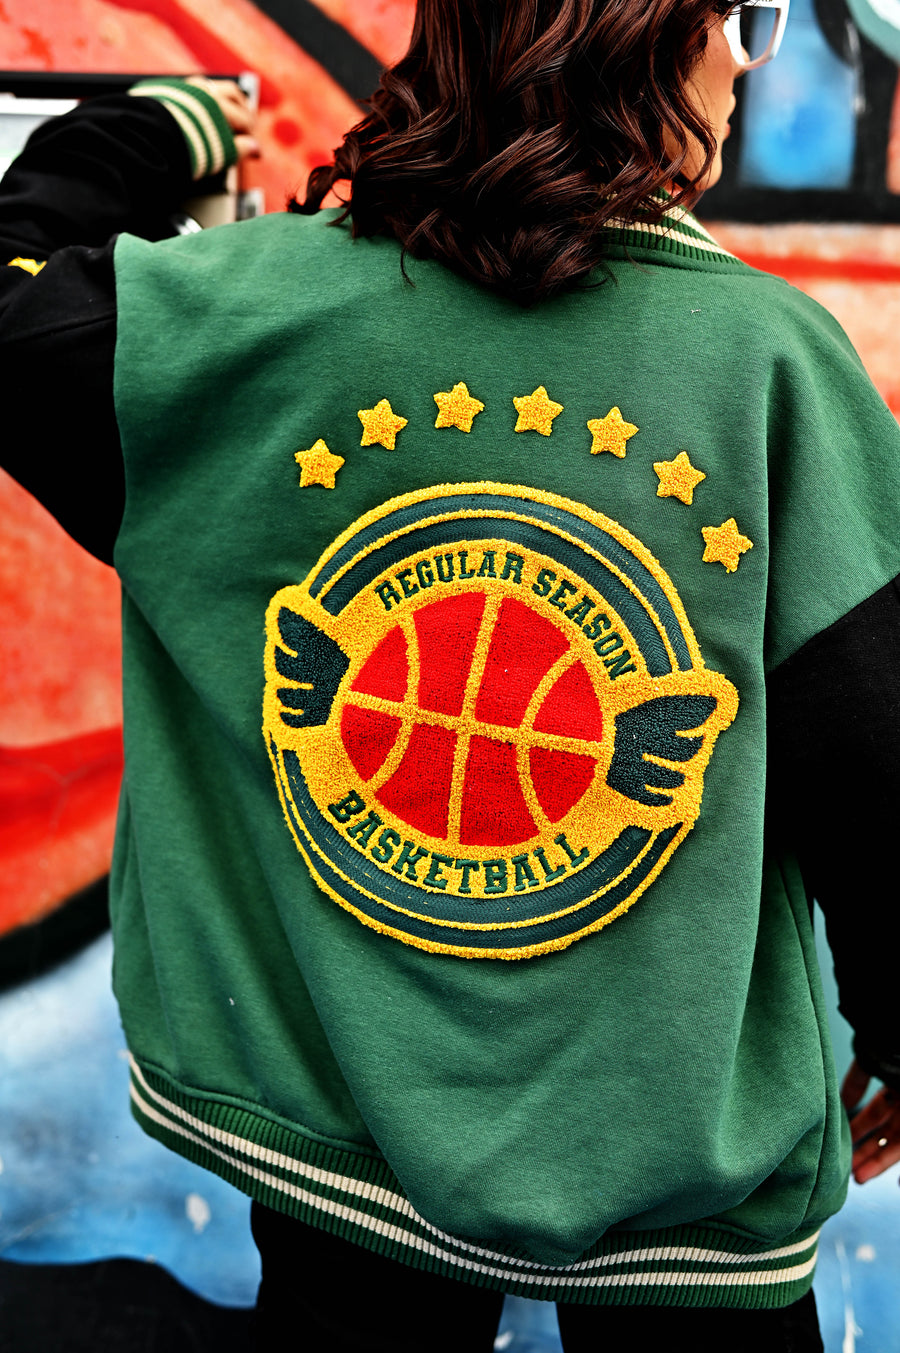 Basketball Breeze: Green & Black Varsity Jacket & Urban Edge Black Cargo Pants